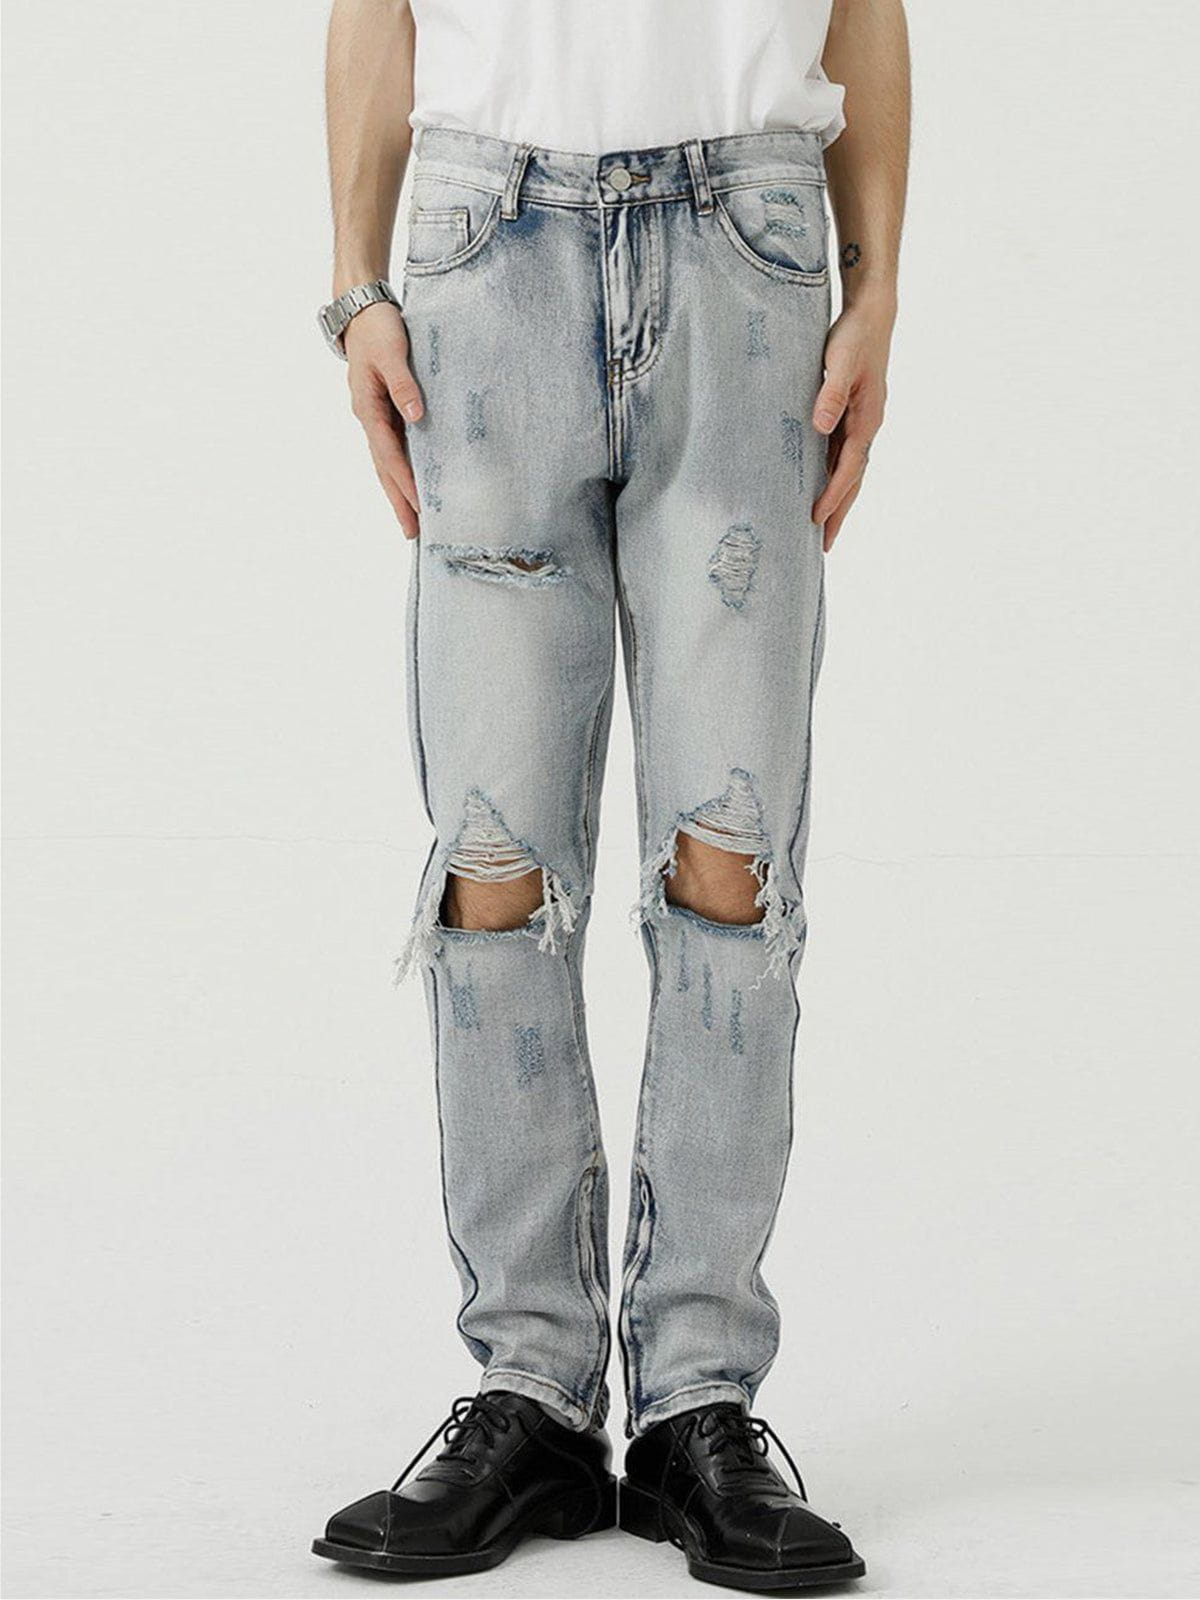 Eprezzy® - Hole Design Jeans Streetwear Fashion - eprezzy.com